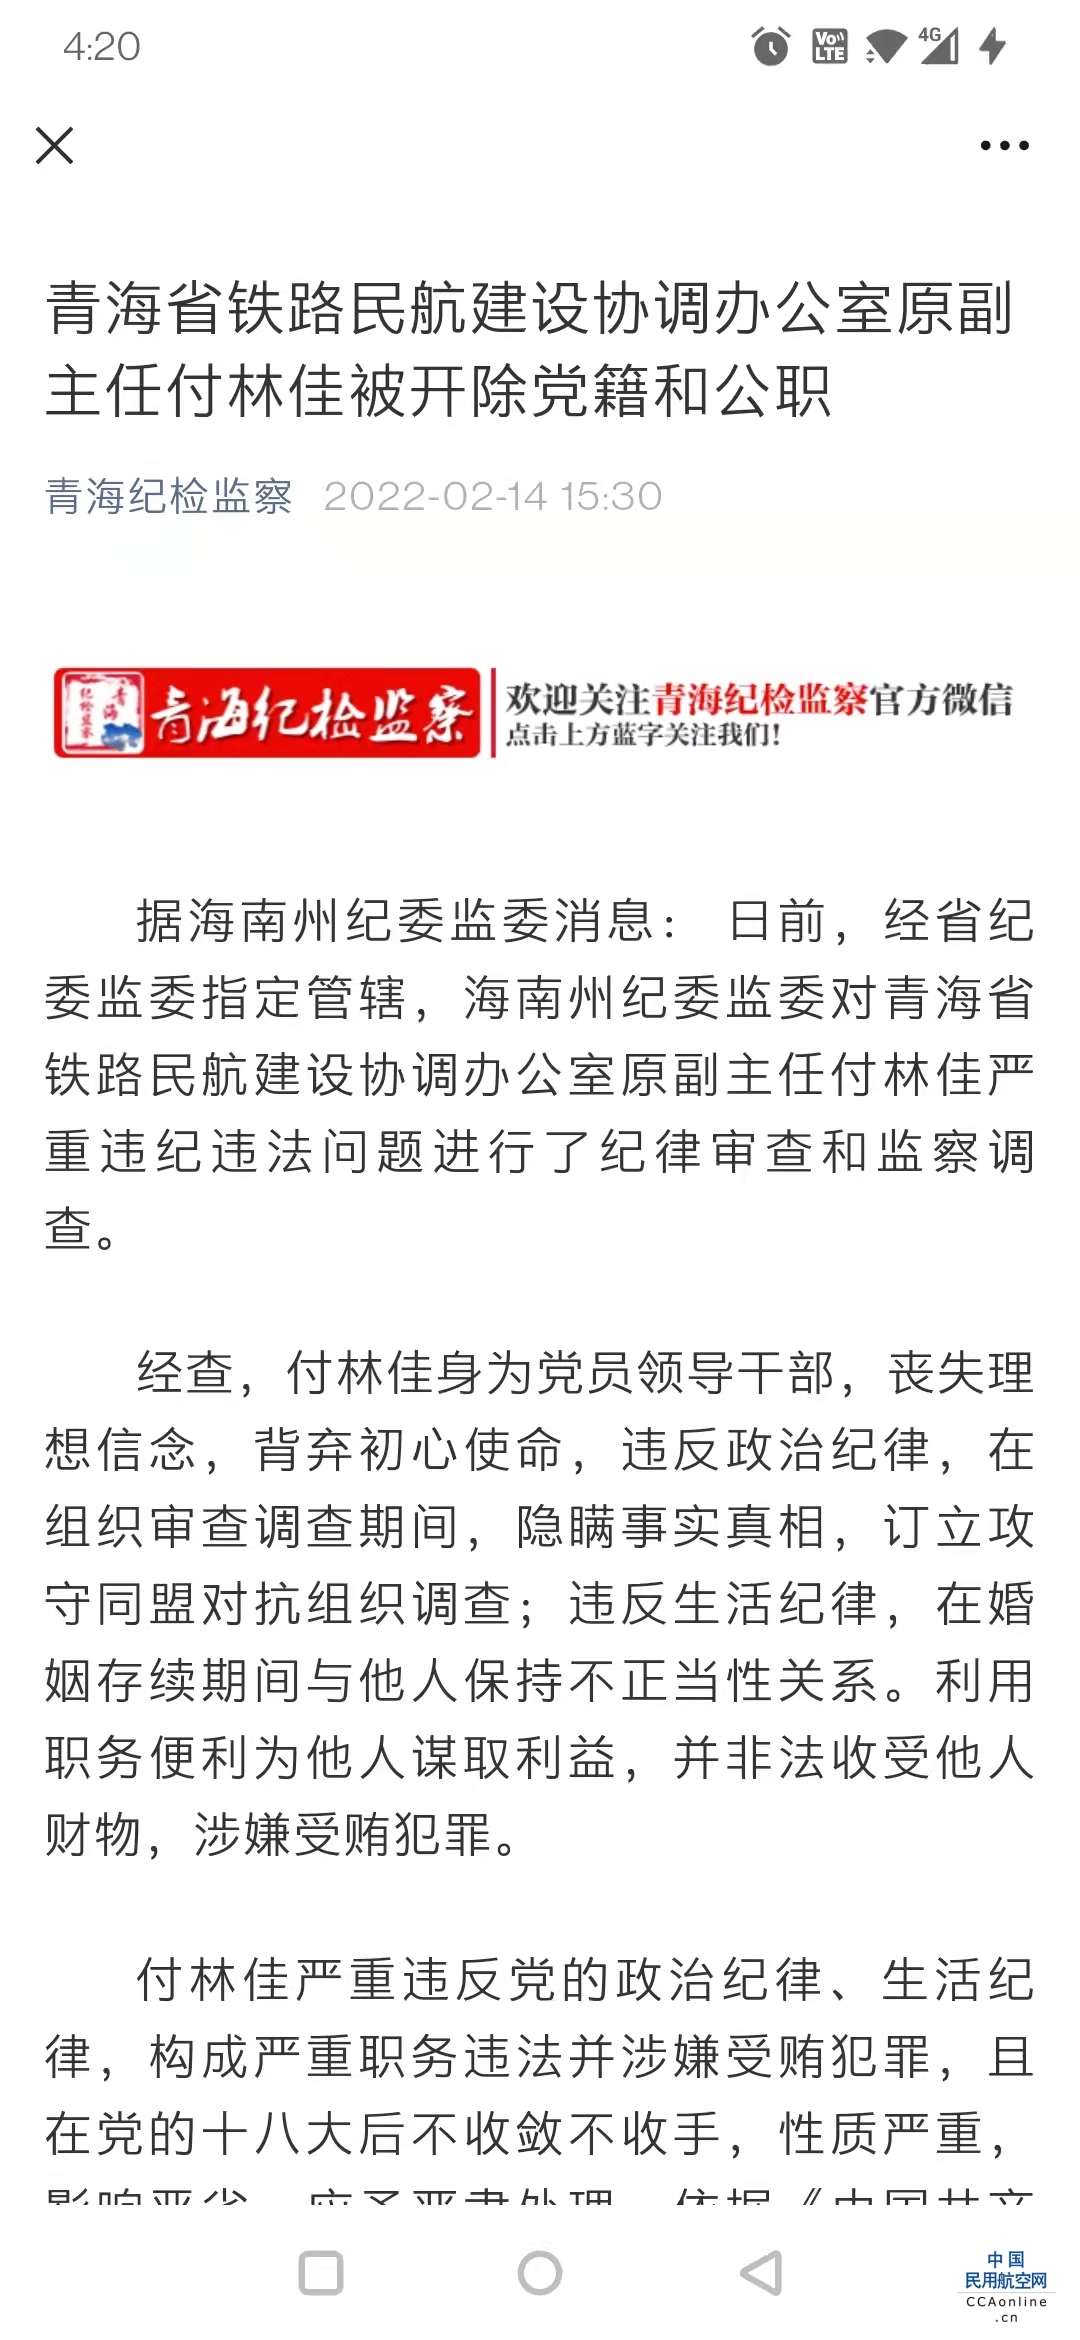 青海省铁路民航建设协调办公室原副主任付林佳被“双开”